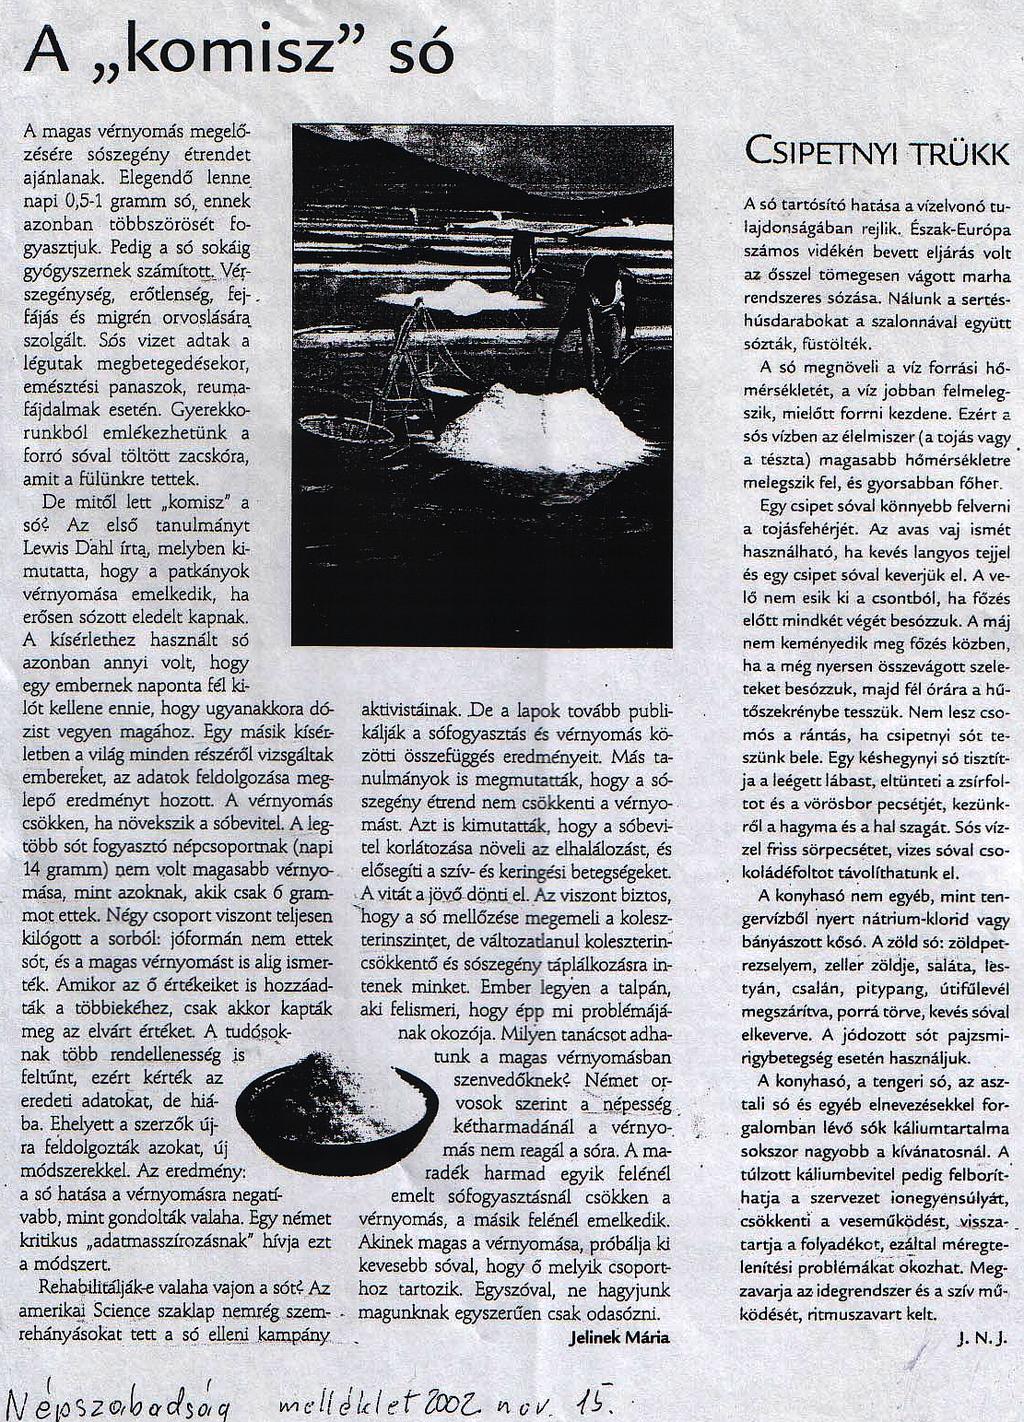 30./21 A kalibrálási csaláson alapuló népirtást elmesélő Népszabadság Magazin cikk (2002. november 15.